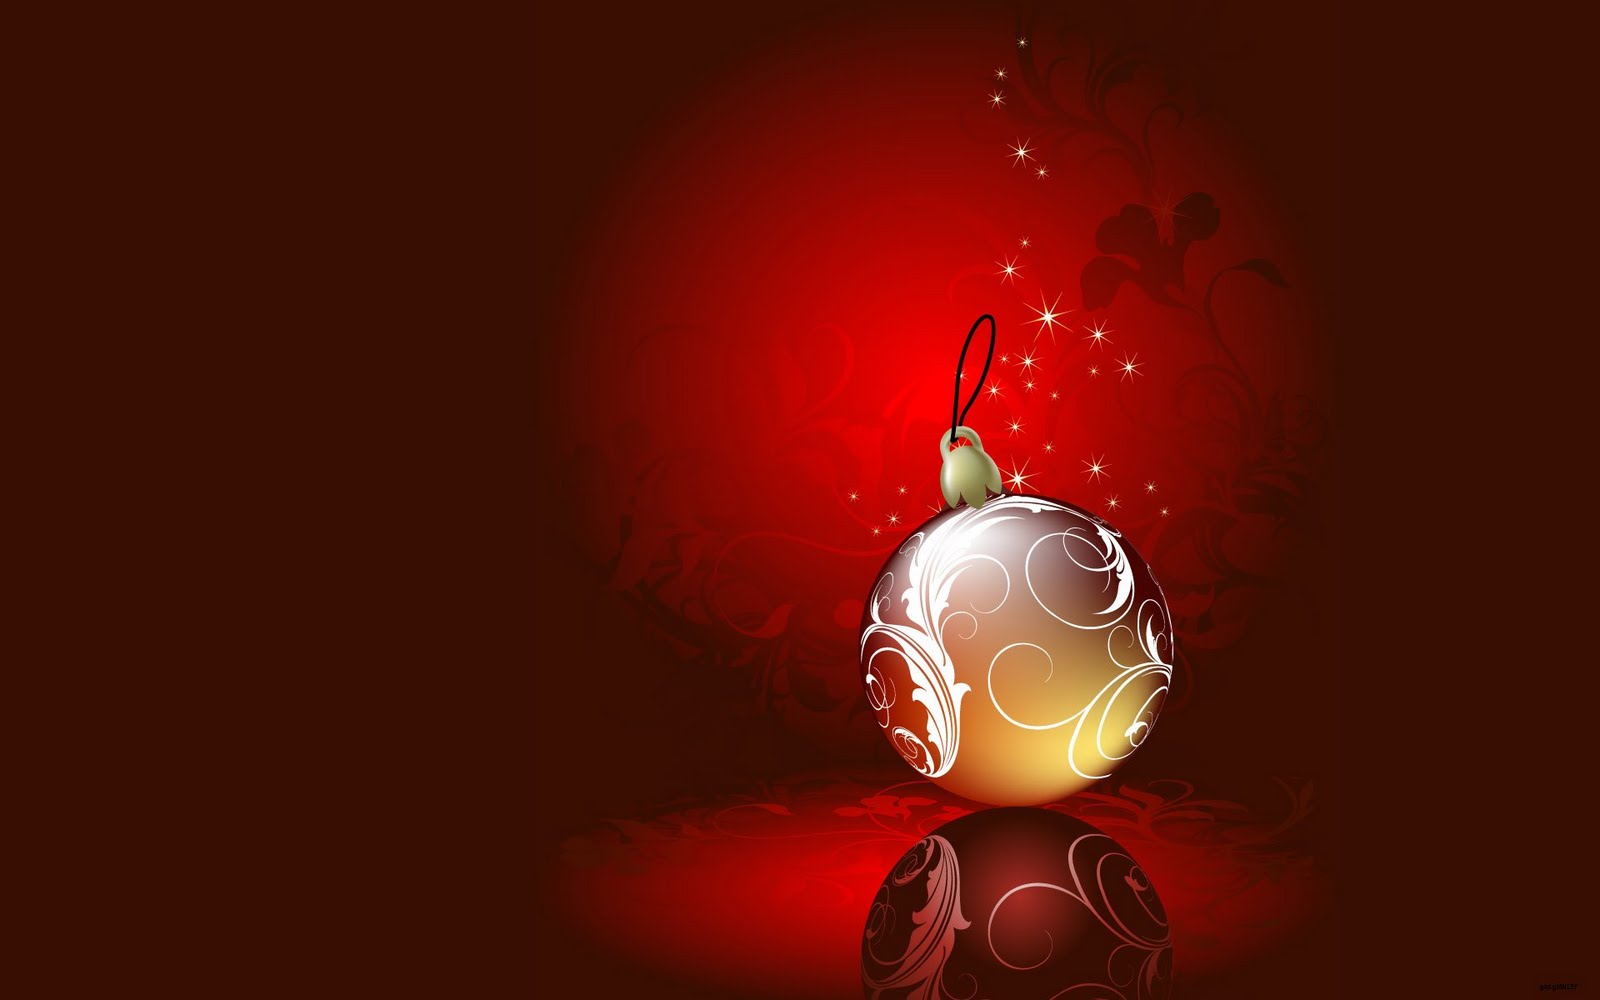 Immagini Desktop Natale 3d.Immagini Desktop Natale Gratis